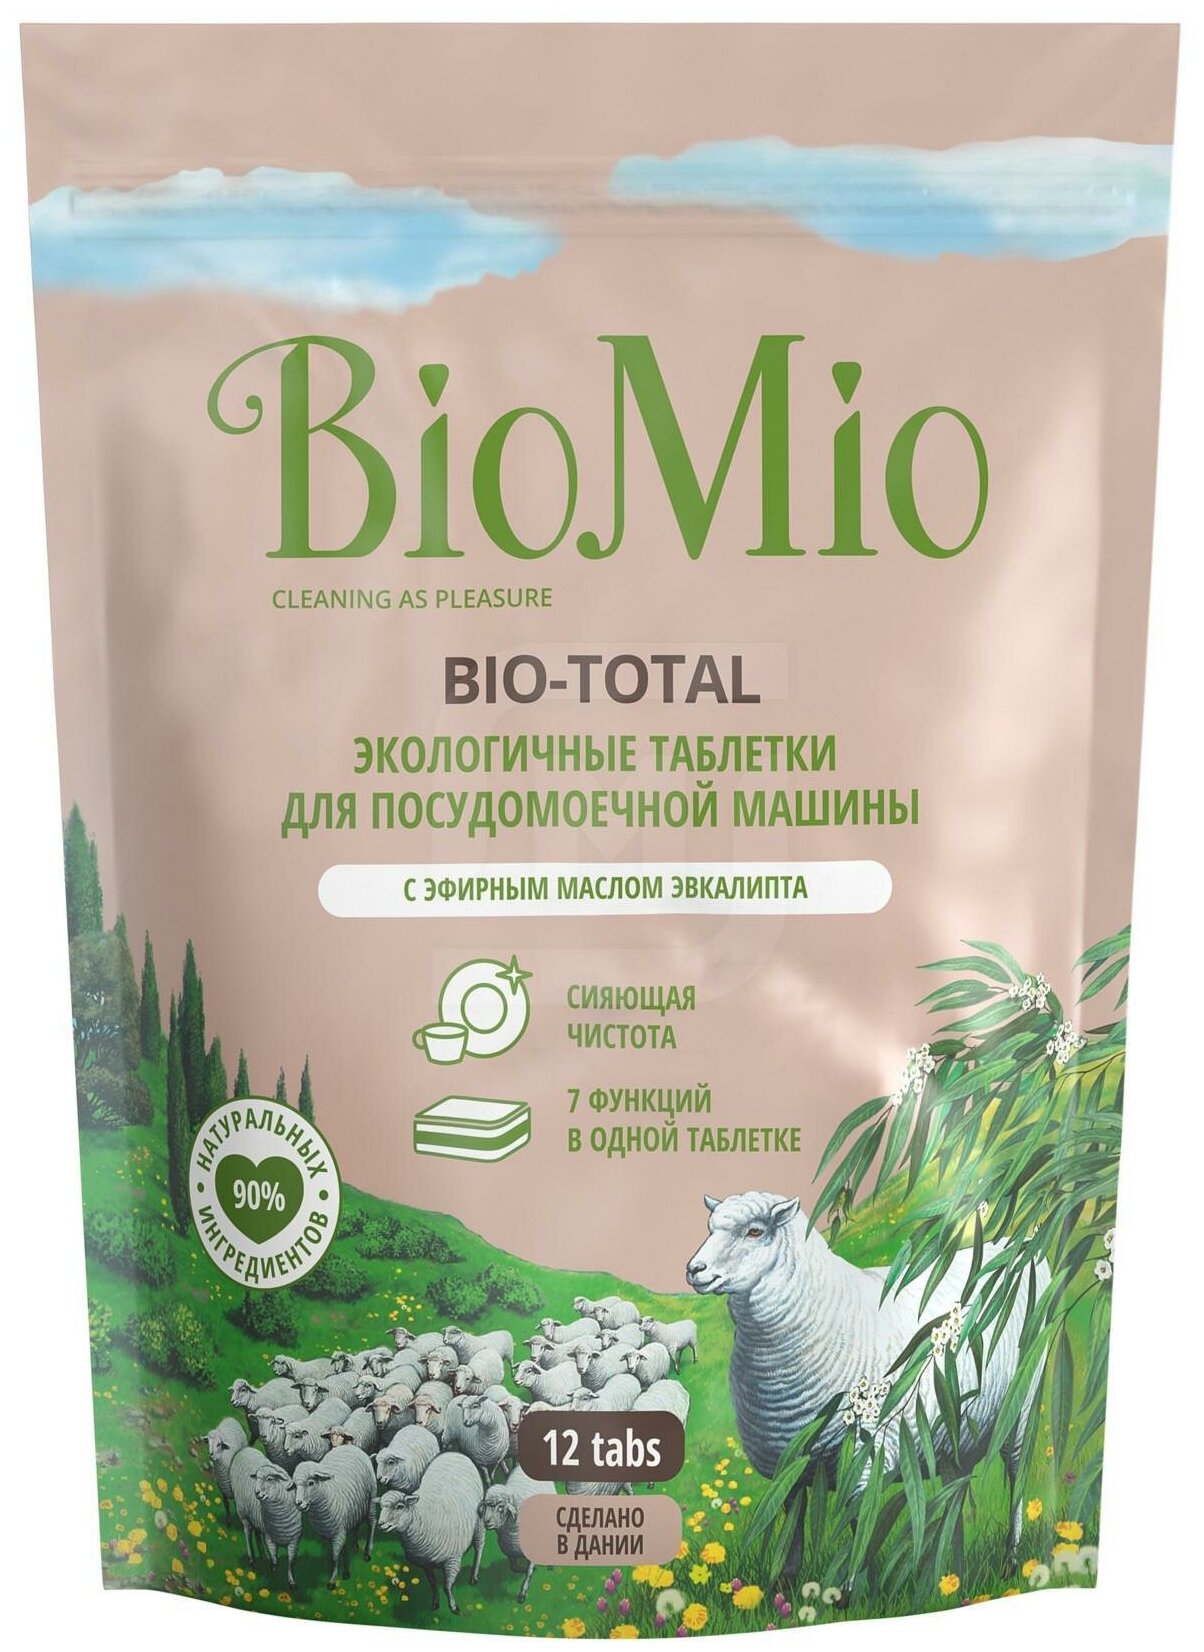 Таблетки для посудомоечных машин Biomio Bio-Total с маслом эвкалипта 12шт